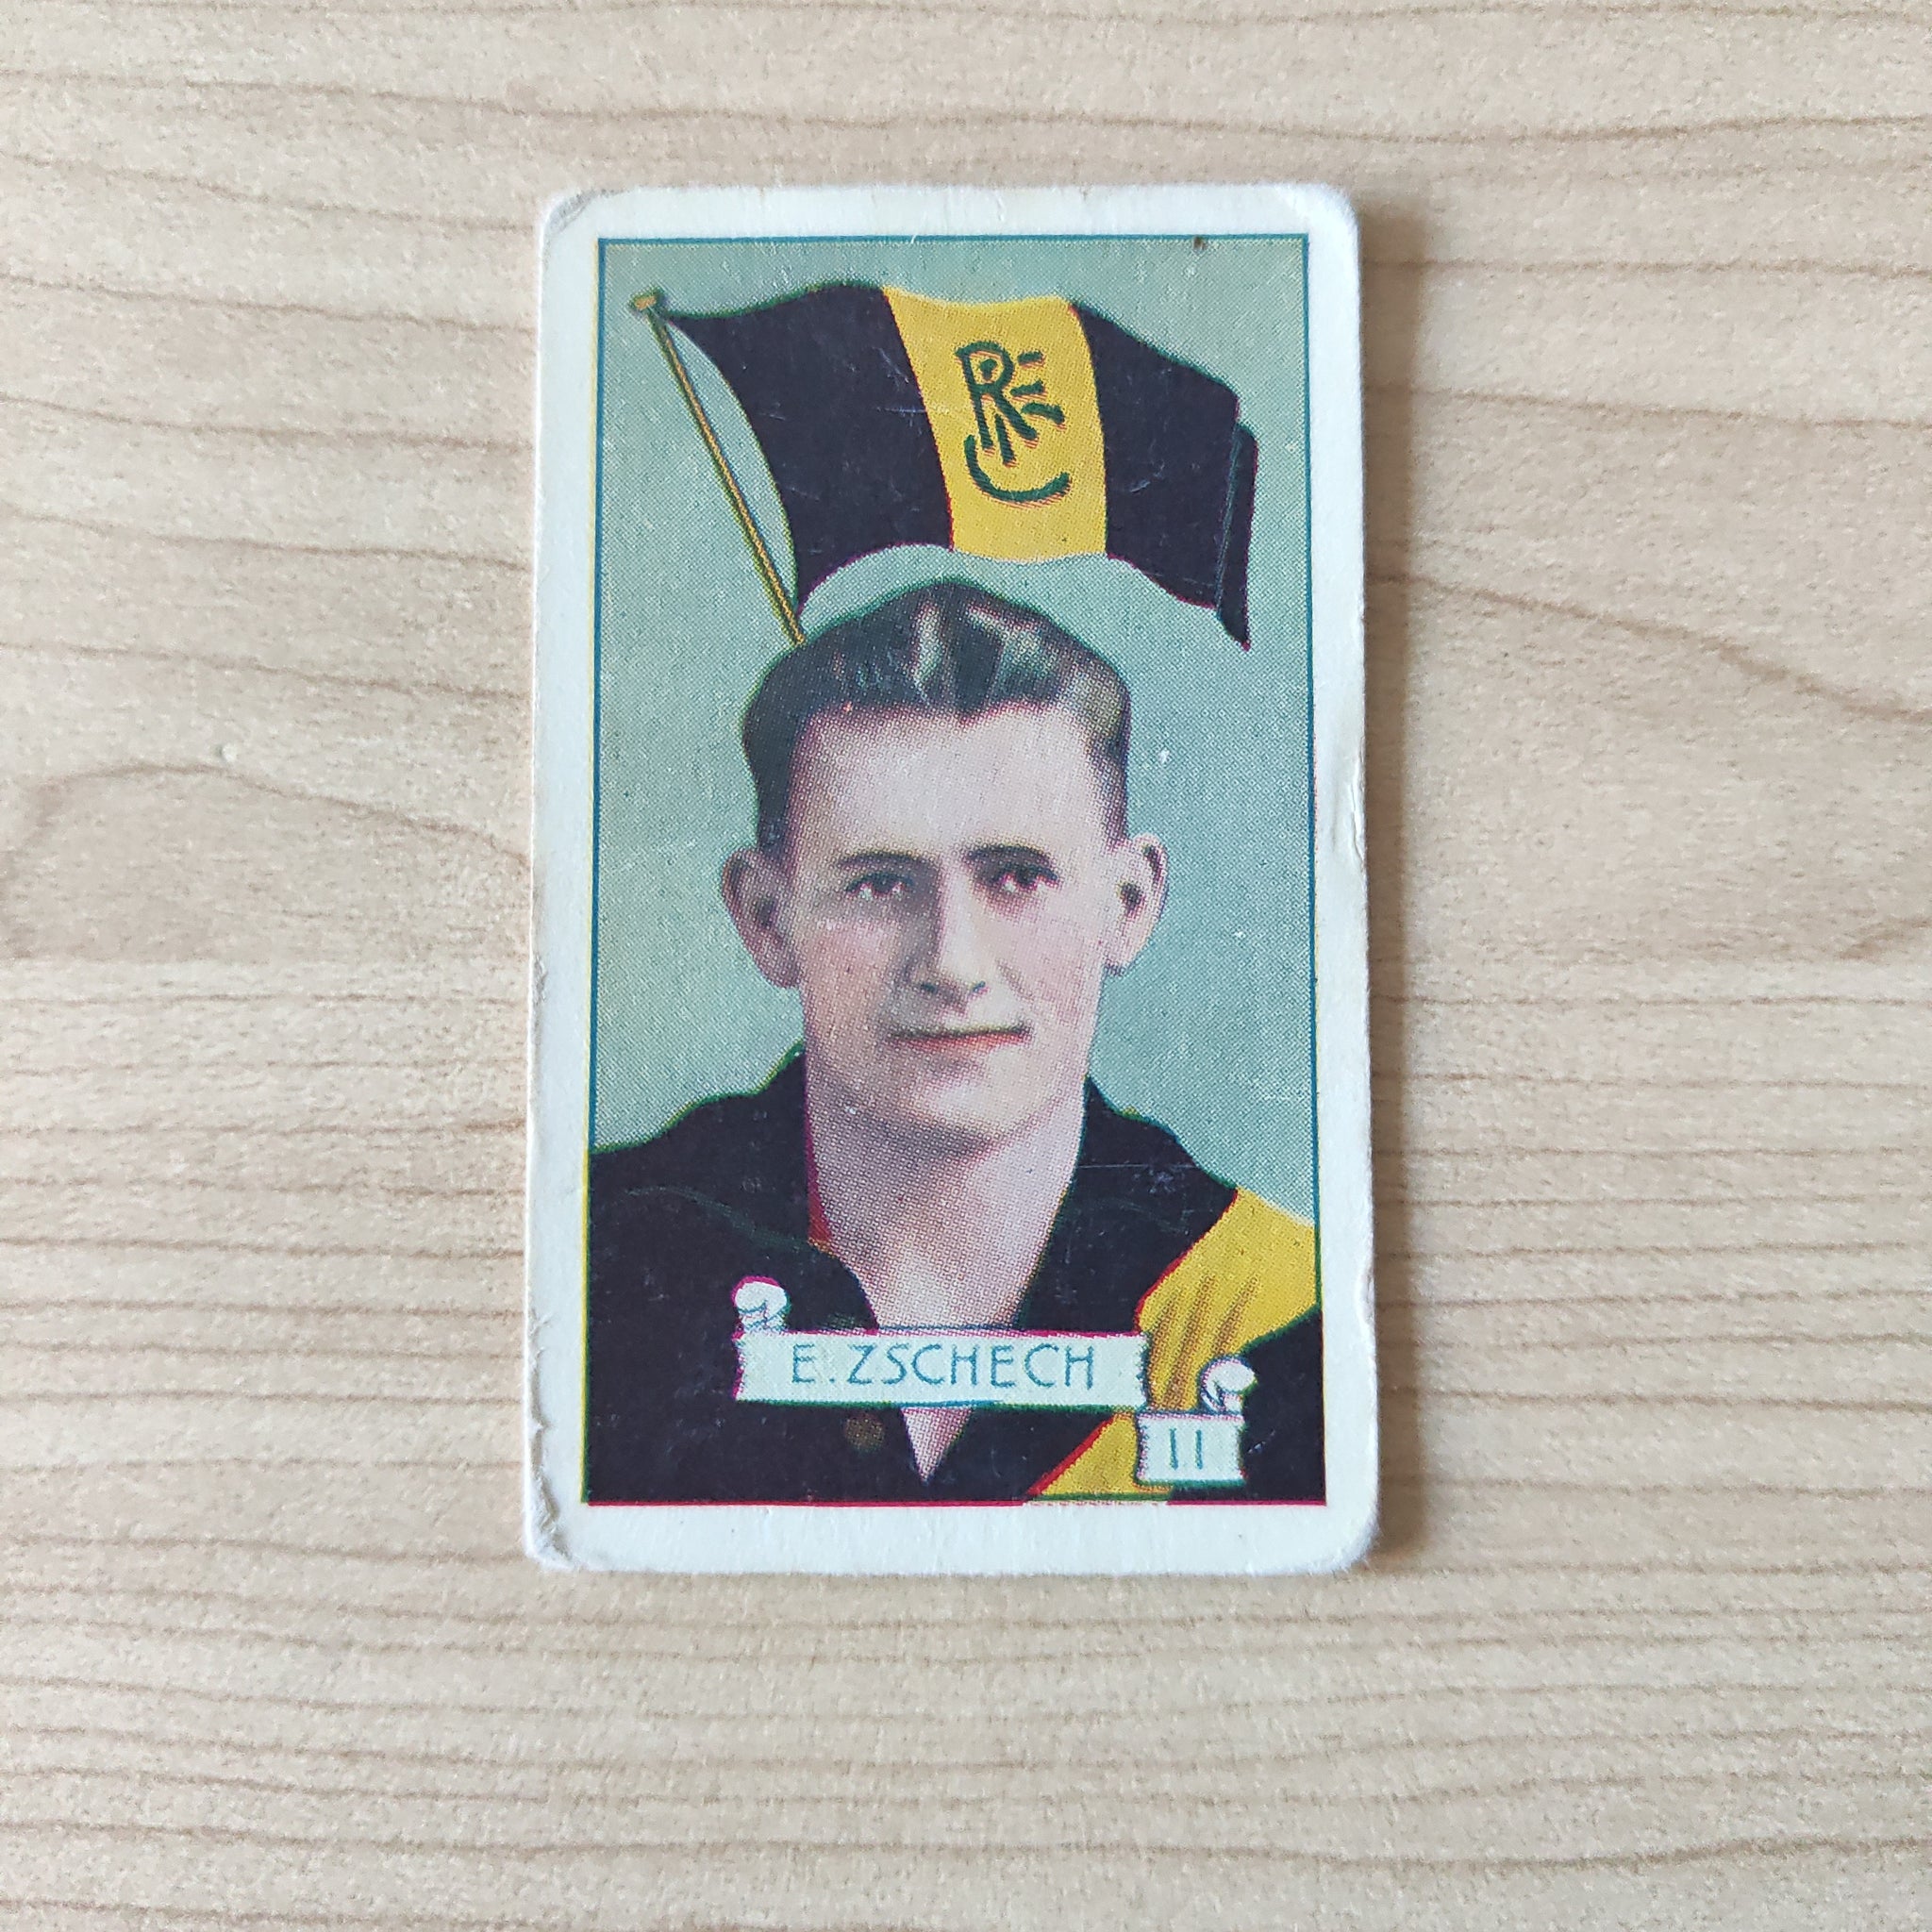 VFL 1934 Football Pennants. E Zschech, Richmond. Allen's Trading Card